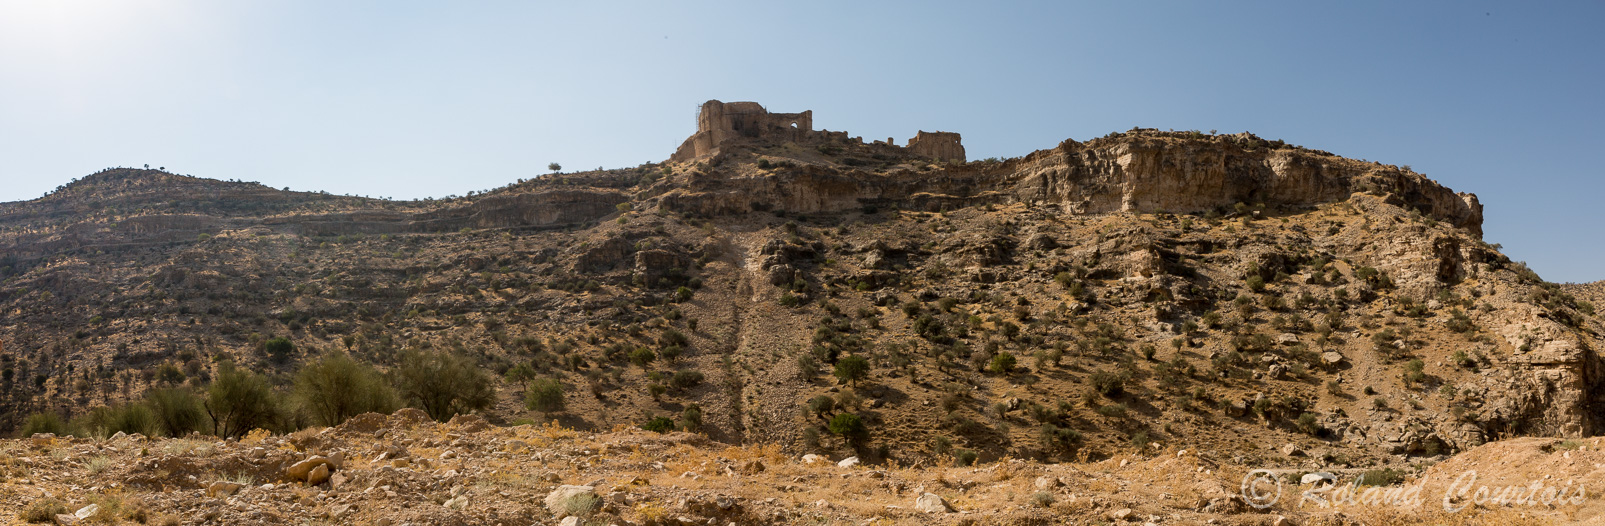 Une gorge impressionnante est dominée par les fortifications d’un château sassanide, le Qala-ye Dokhtar (Château de la Fille), attribué à Ardéshir Ier.